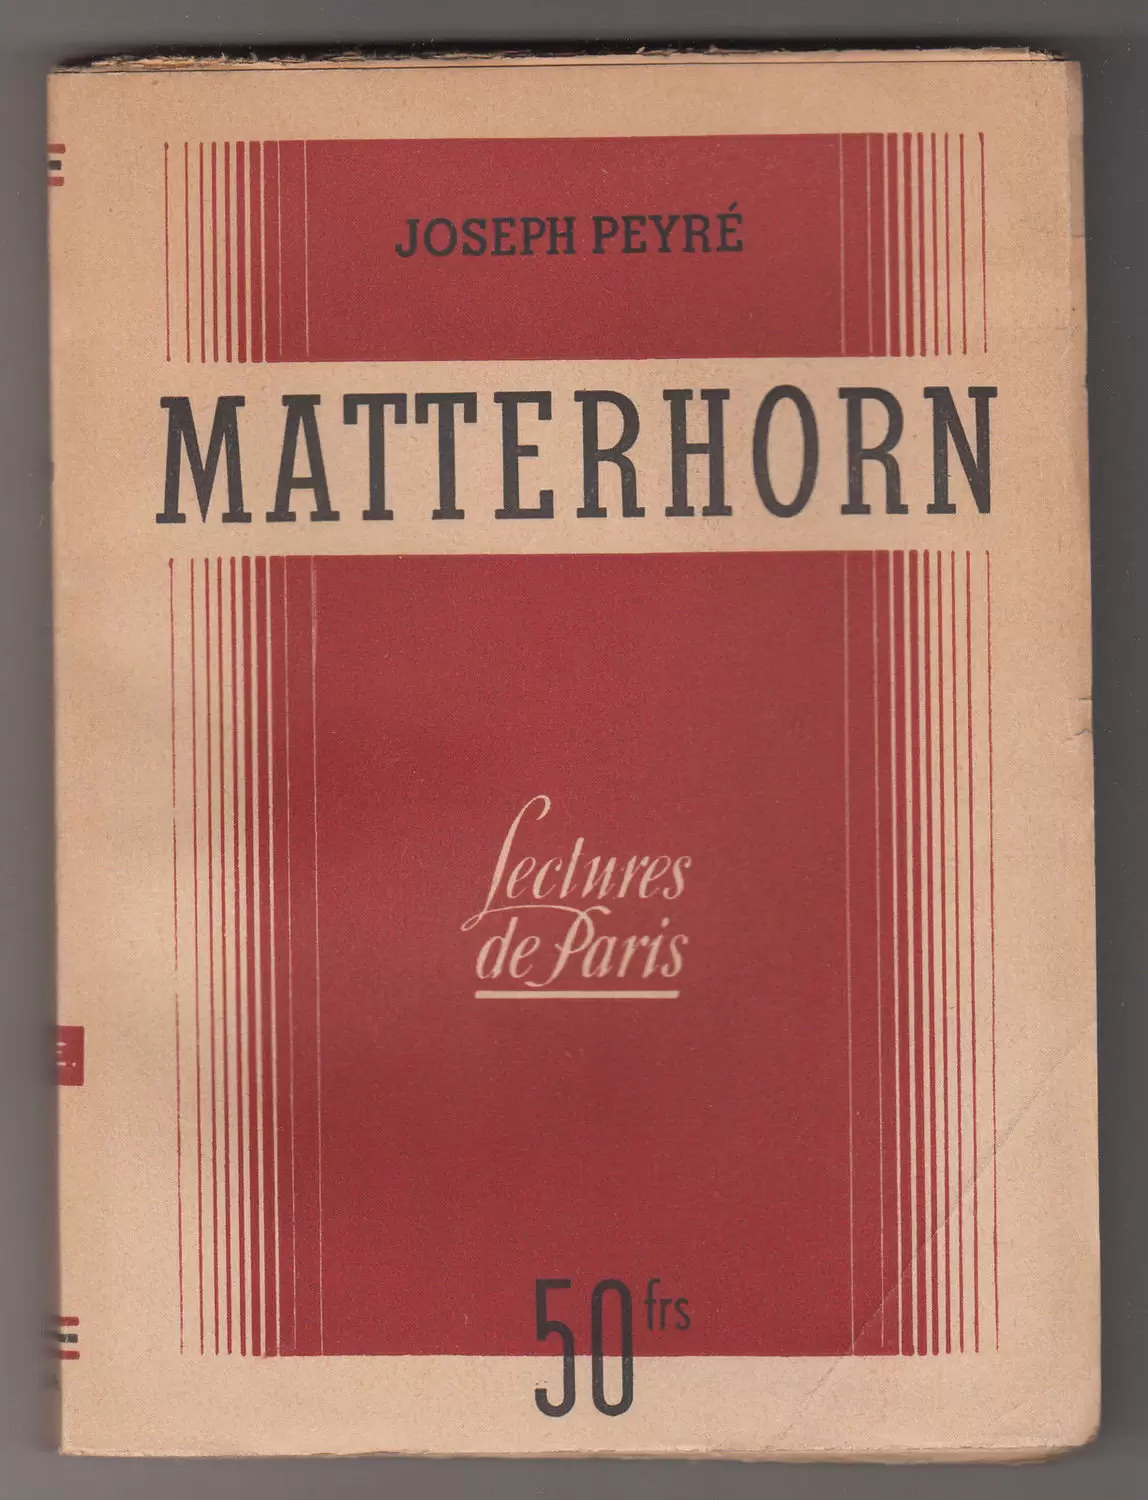 S.E.P.E. Lectures de Paris - Matterhorn